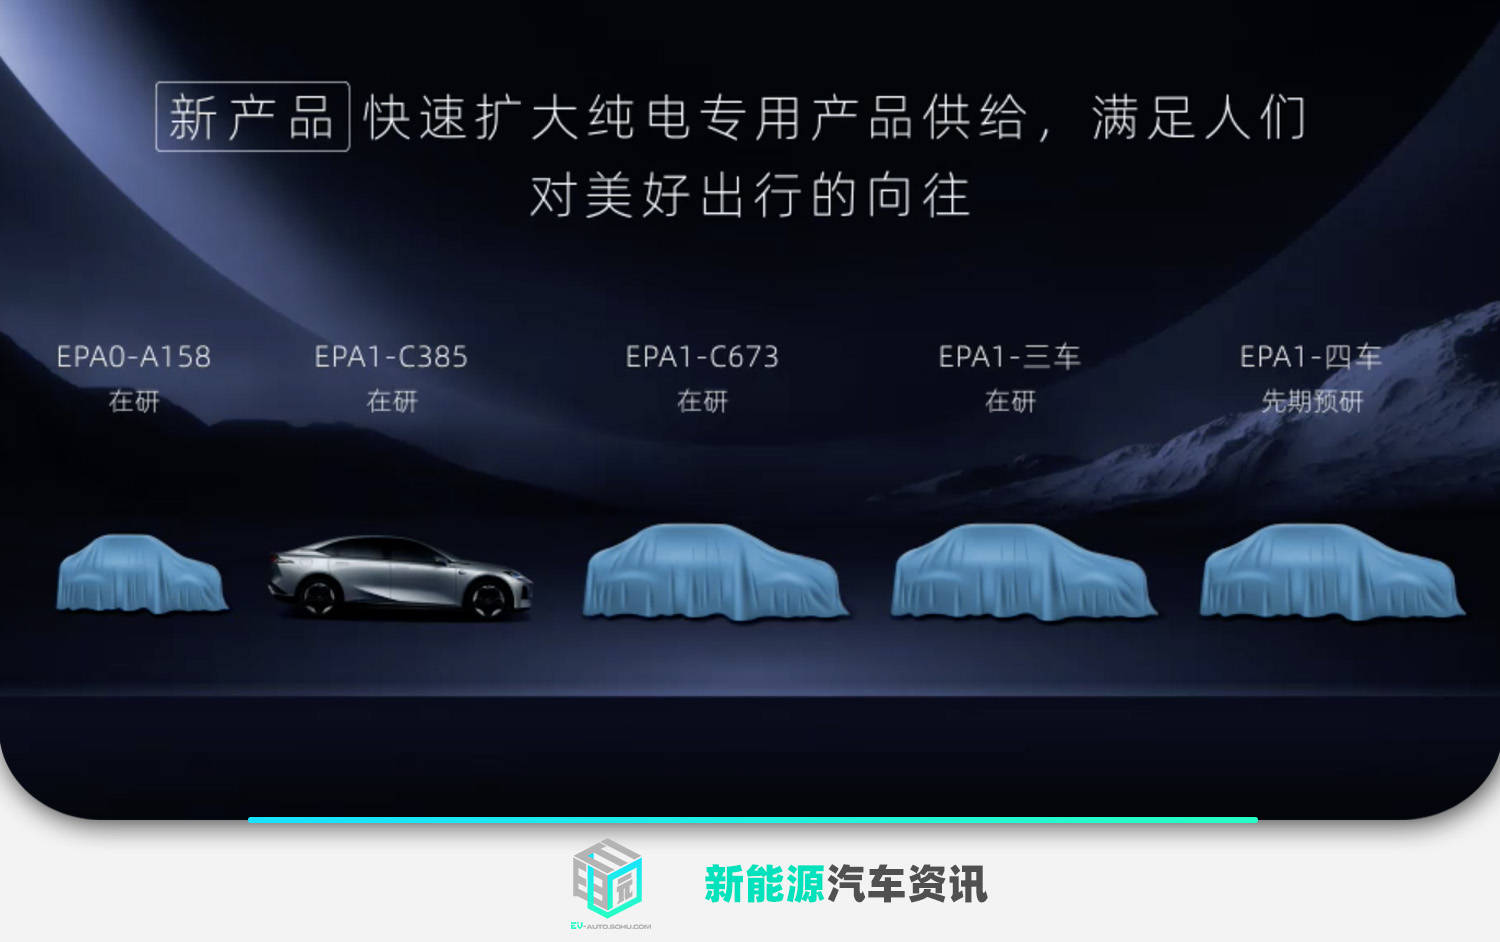 含5款新车型 洛阳节能环保发布新一代商品总体规划